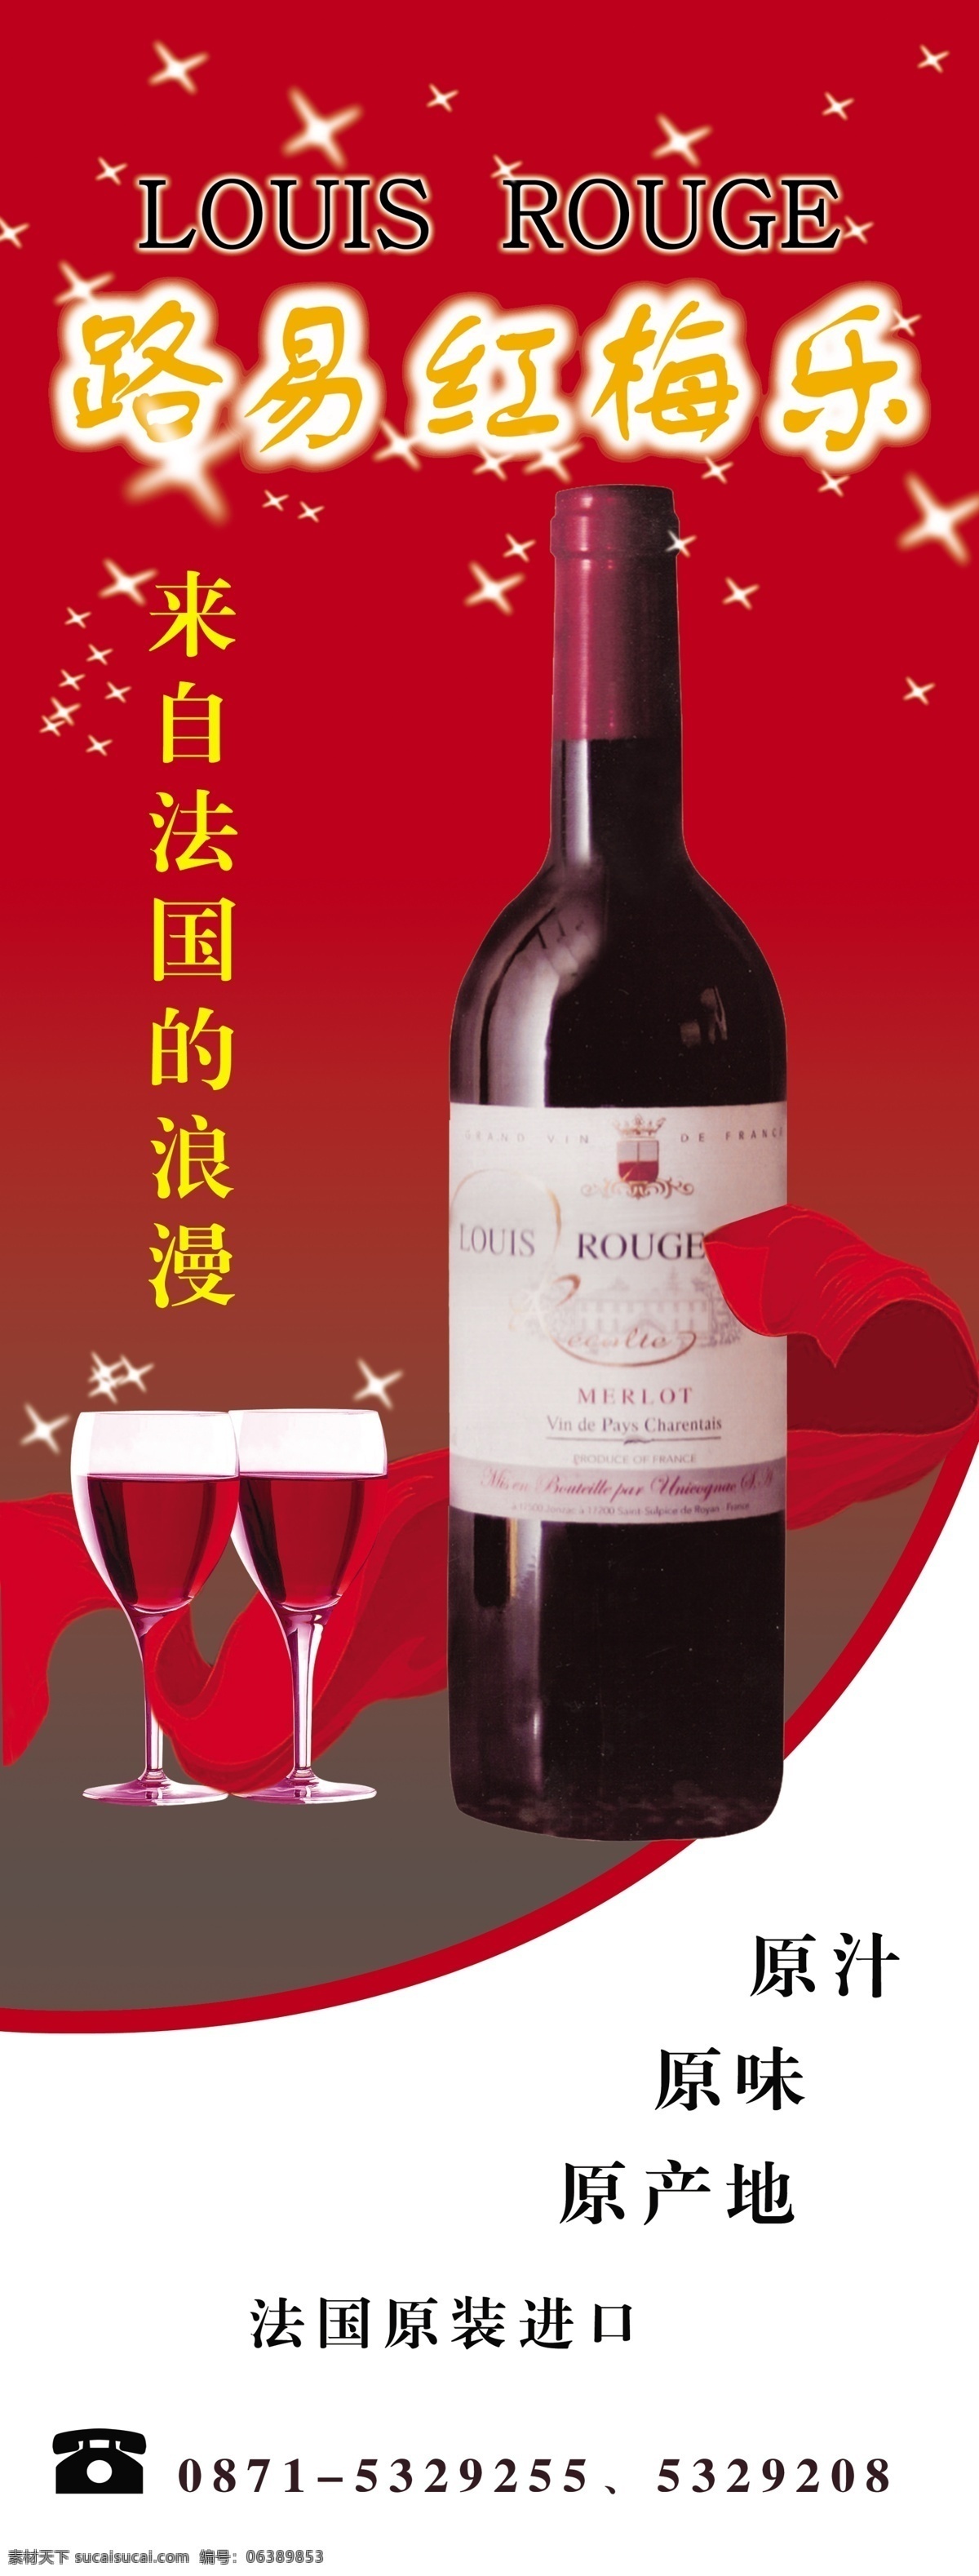 路易 红梅 乐 展板 红色 葡萄酒 红酒 浪漫 法国红酒